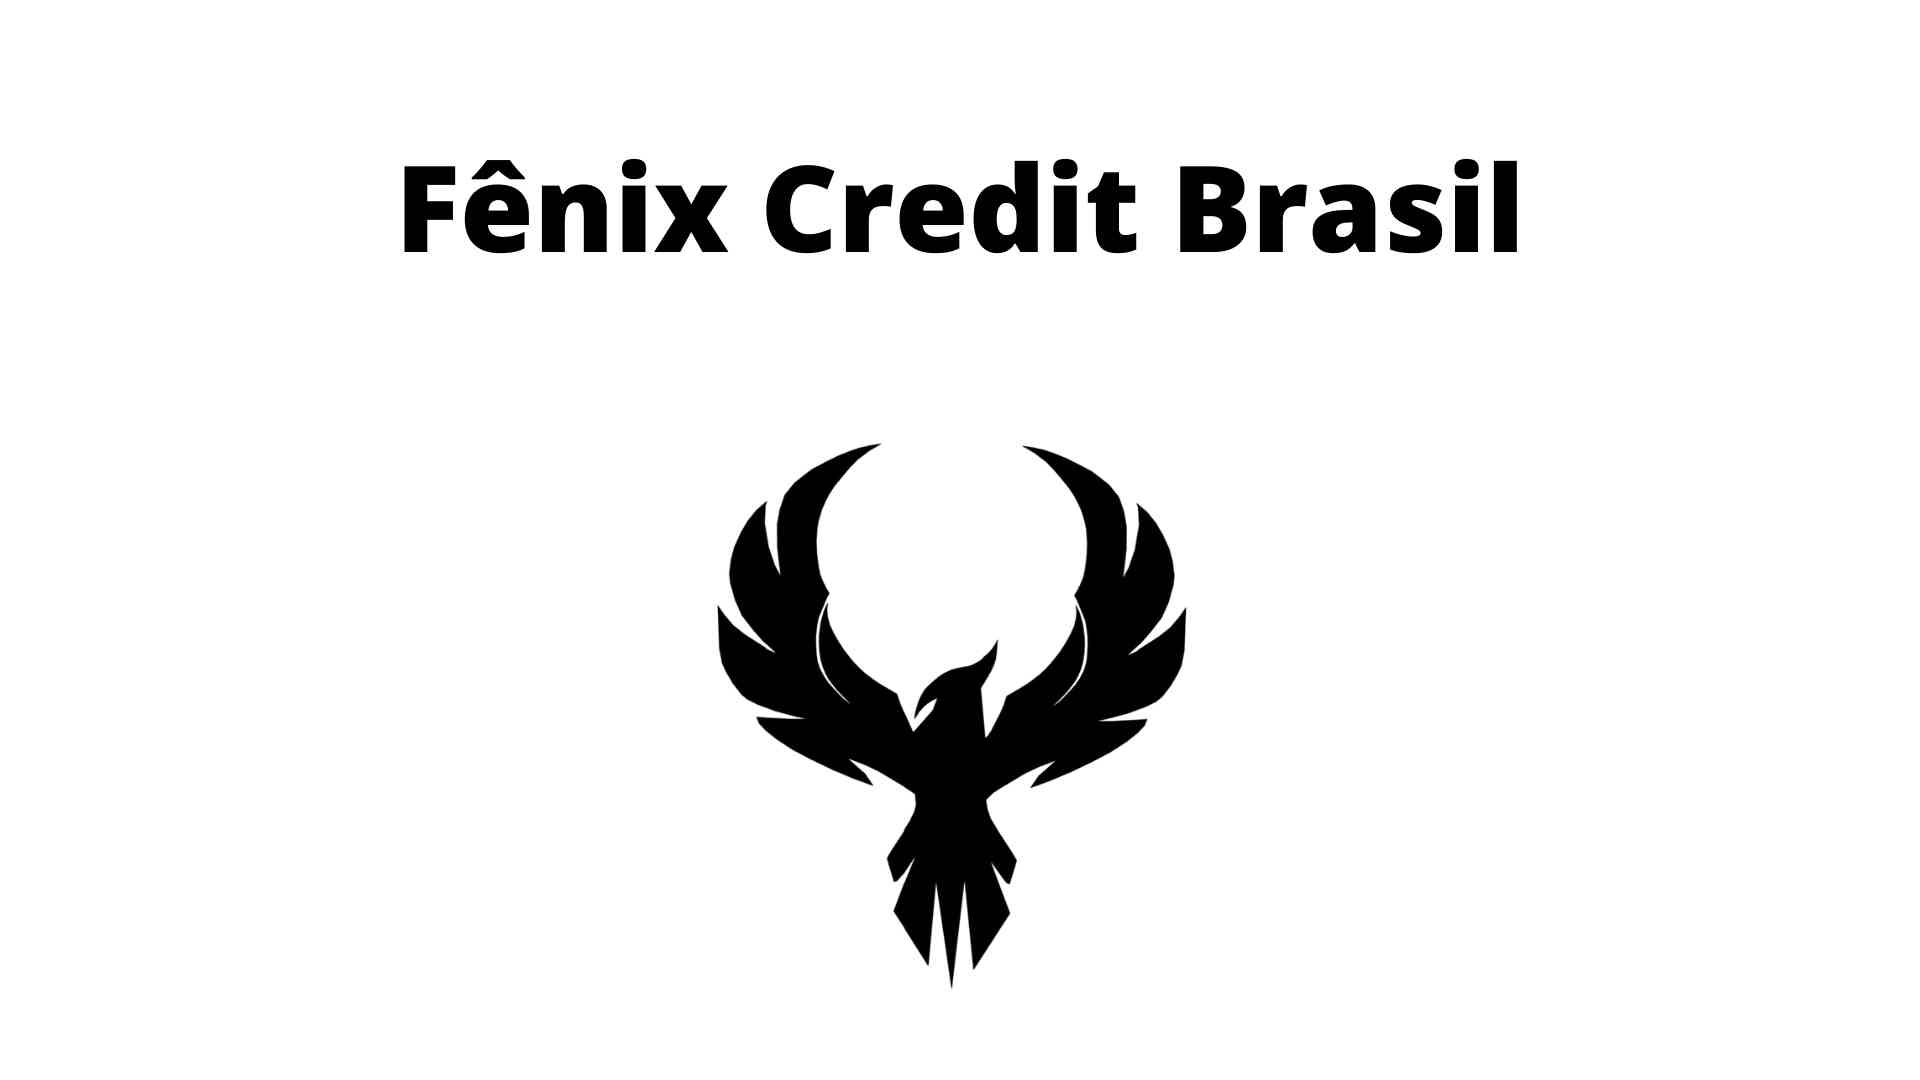 Então, conheça o empréstimo. Fonte: Senhor Finanças / Fênix Credit Brasil.